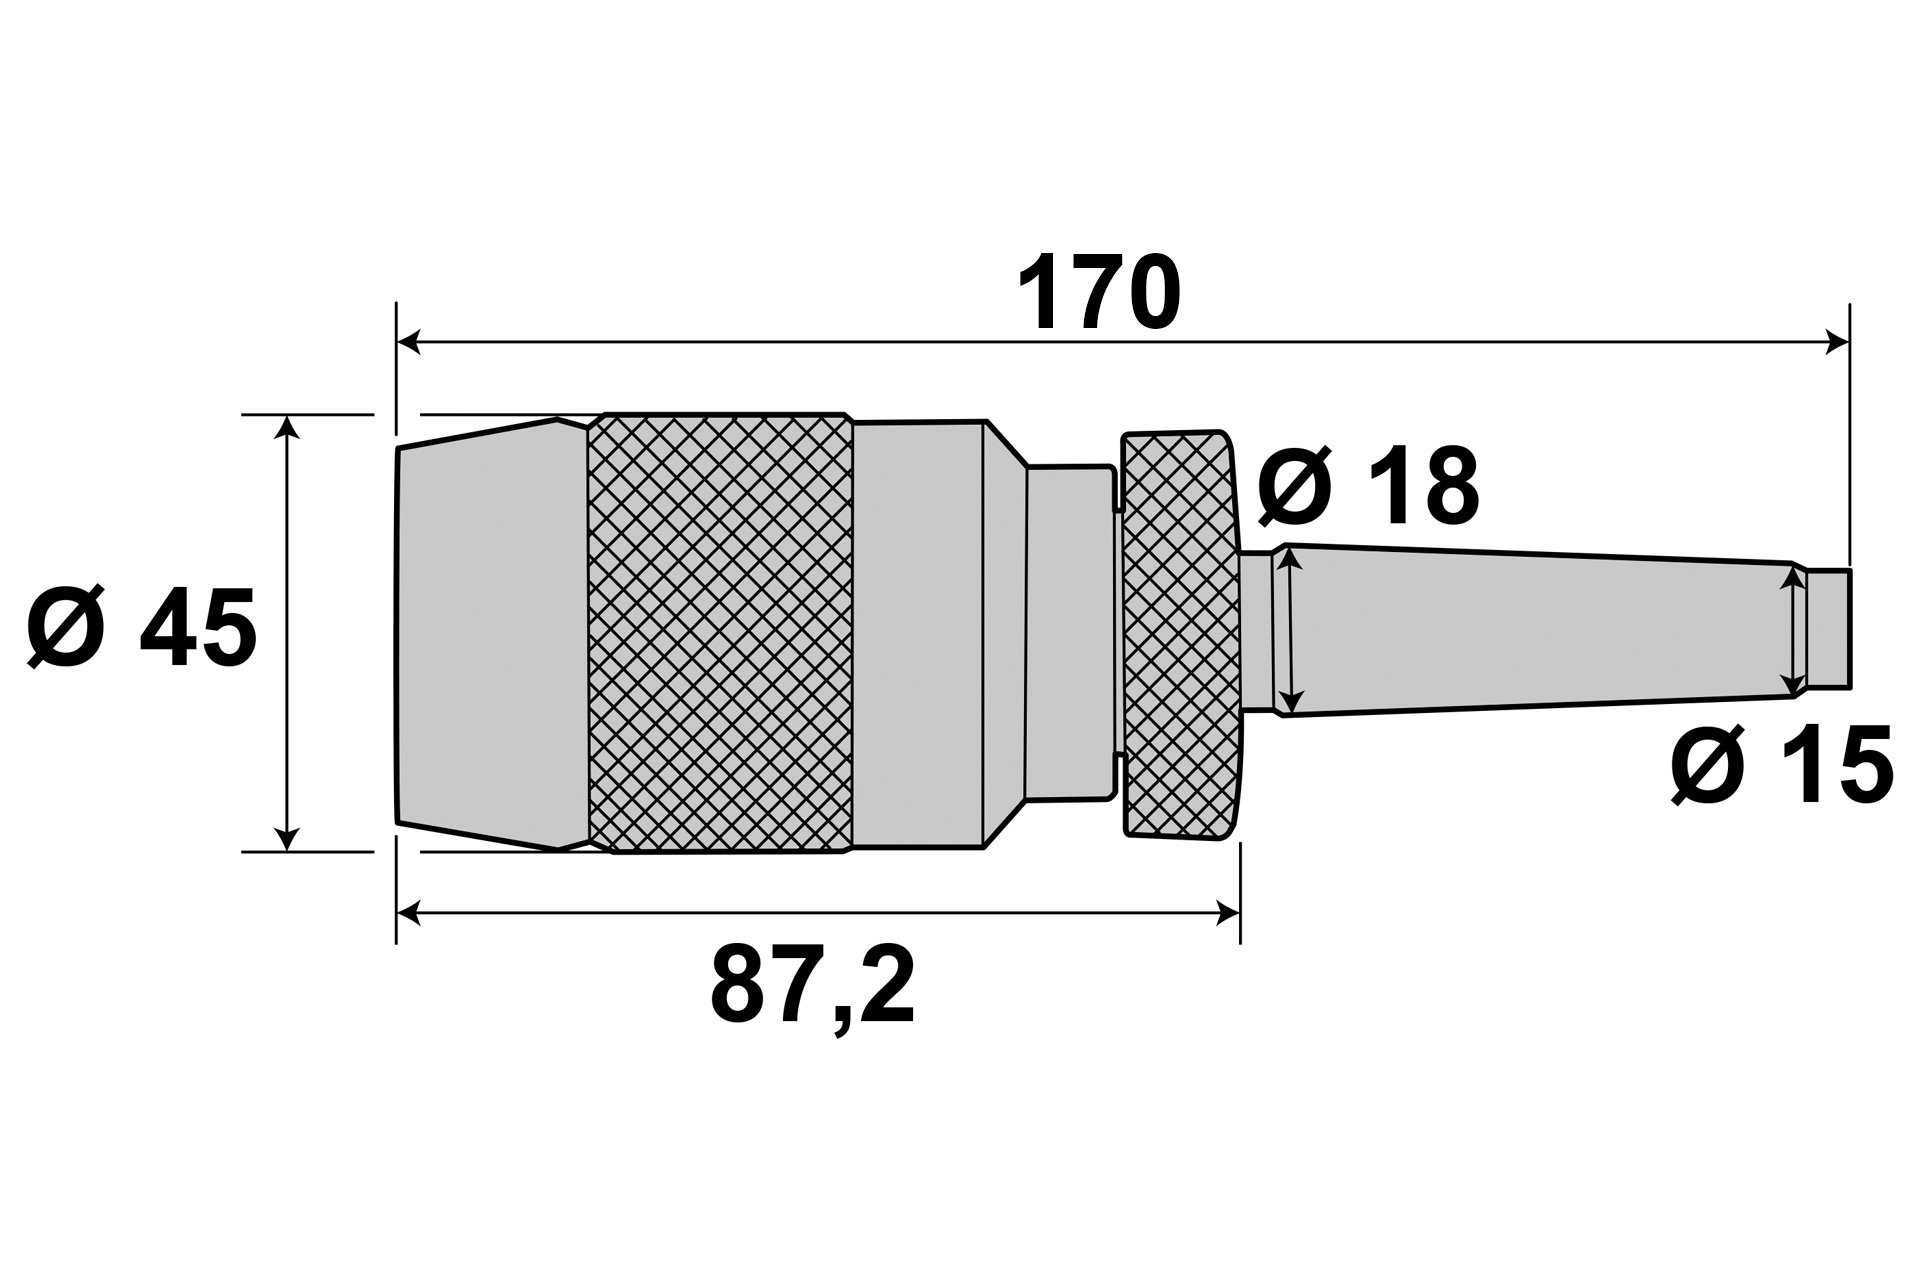 Schnellspann-Bohrfutter 1-13 mm + Kegeldorn MK2 / M10 / B16